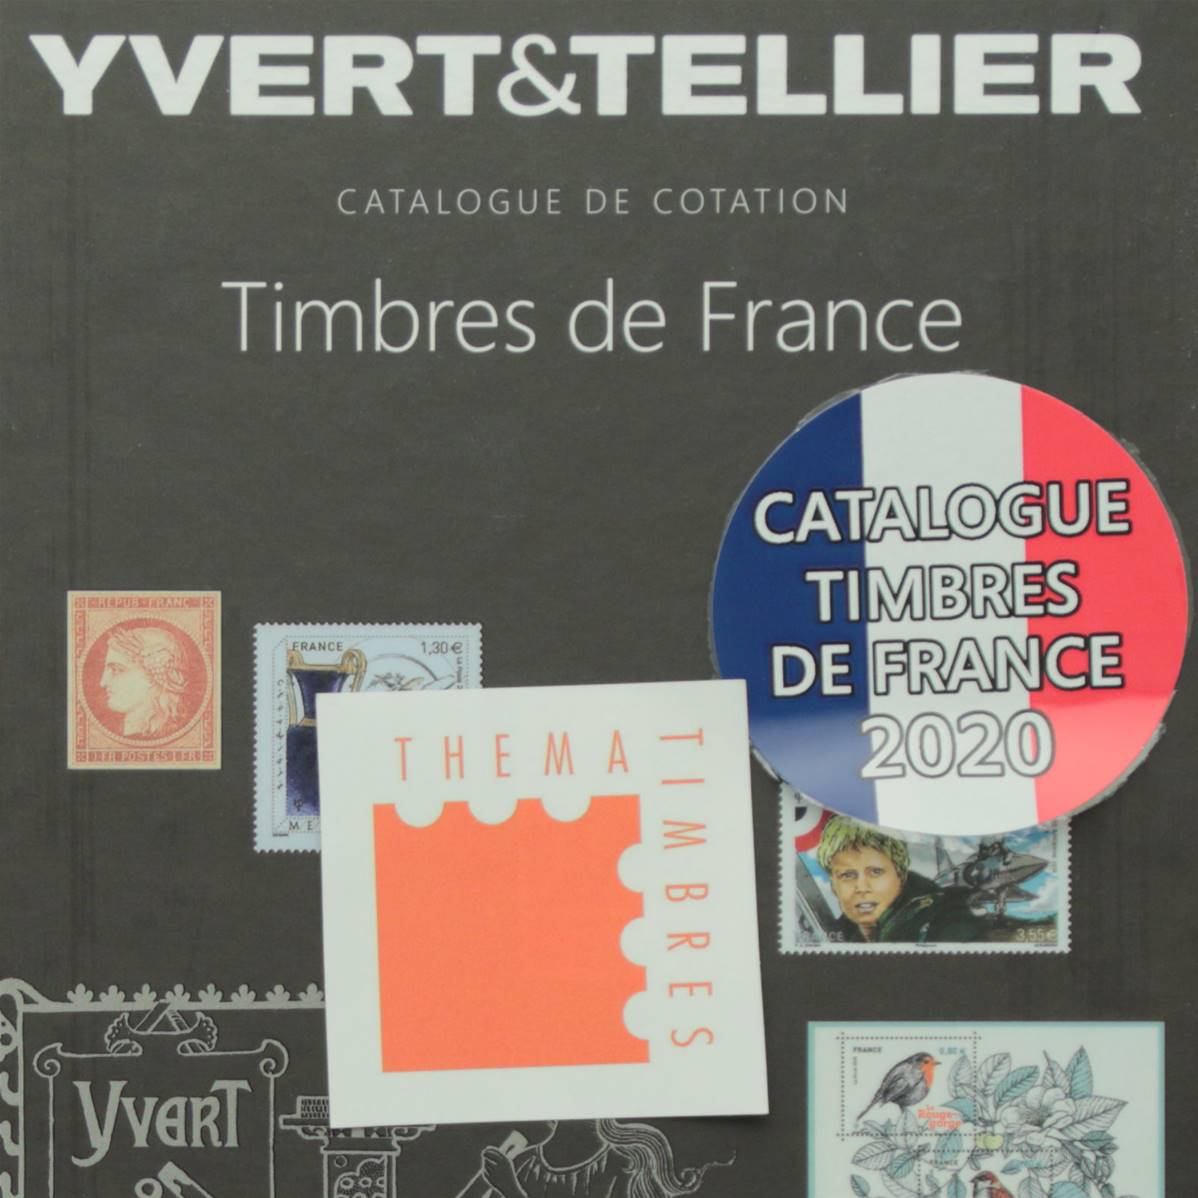 Timbres de France, Yvert & Tellier